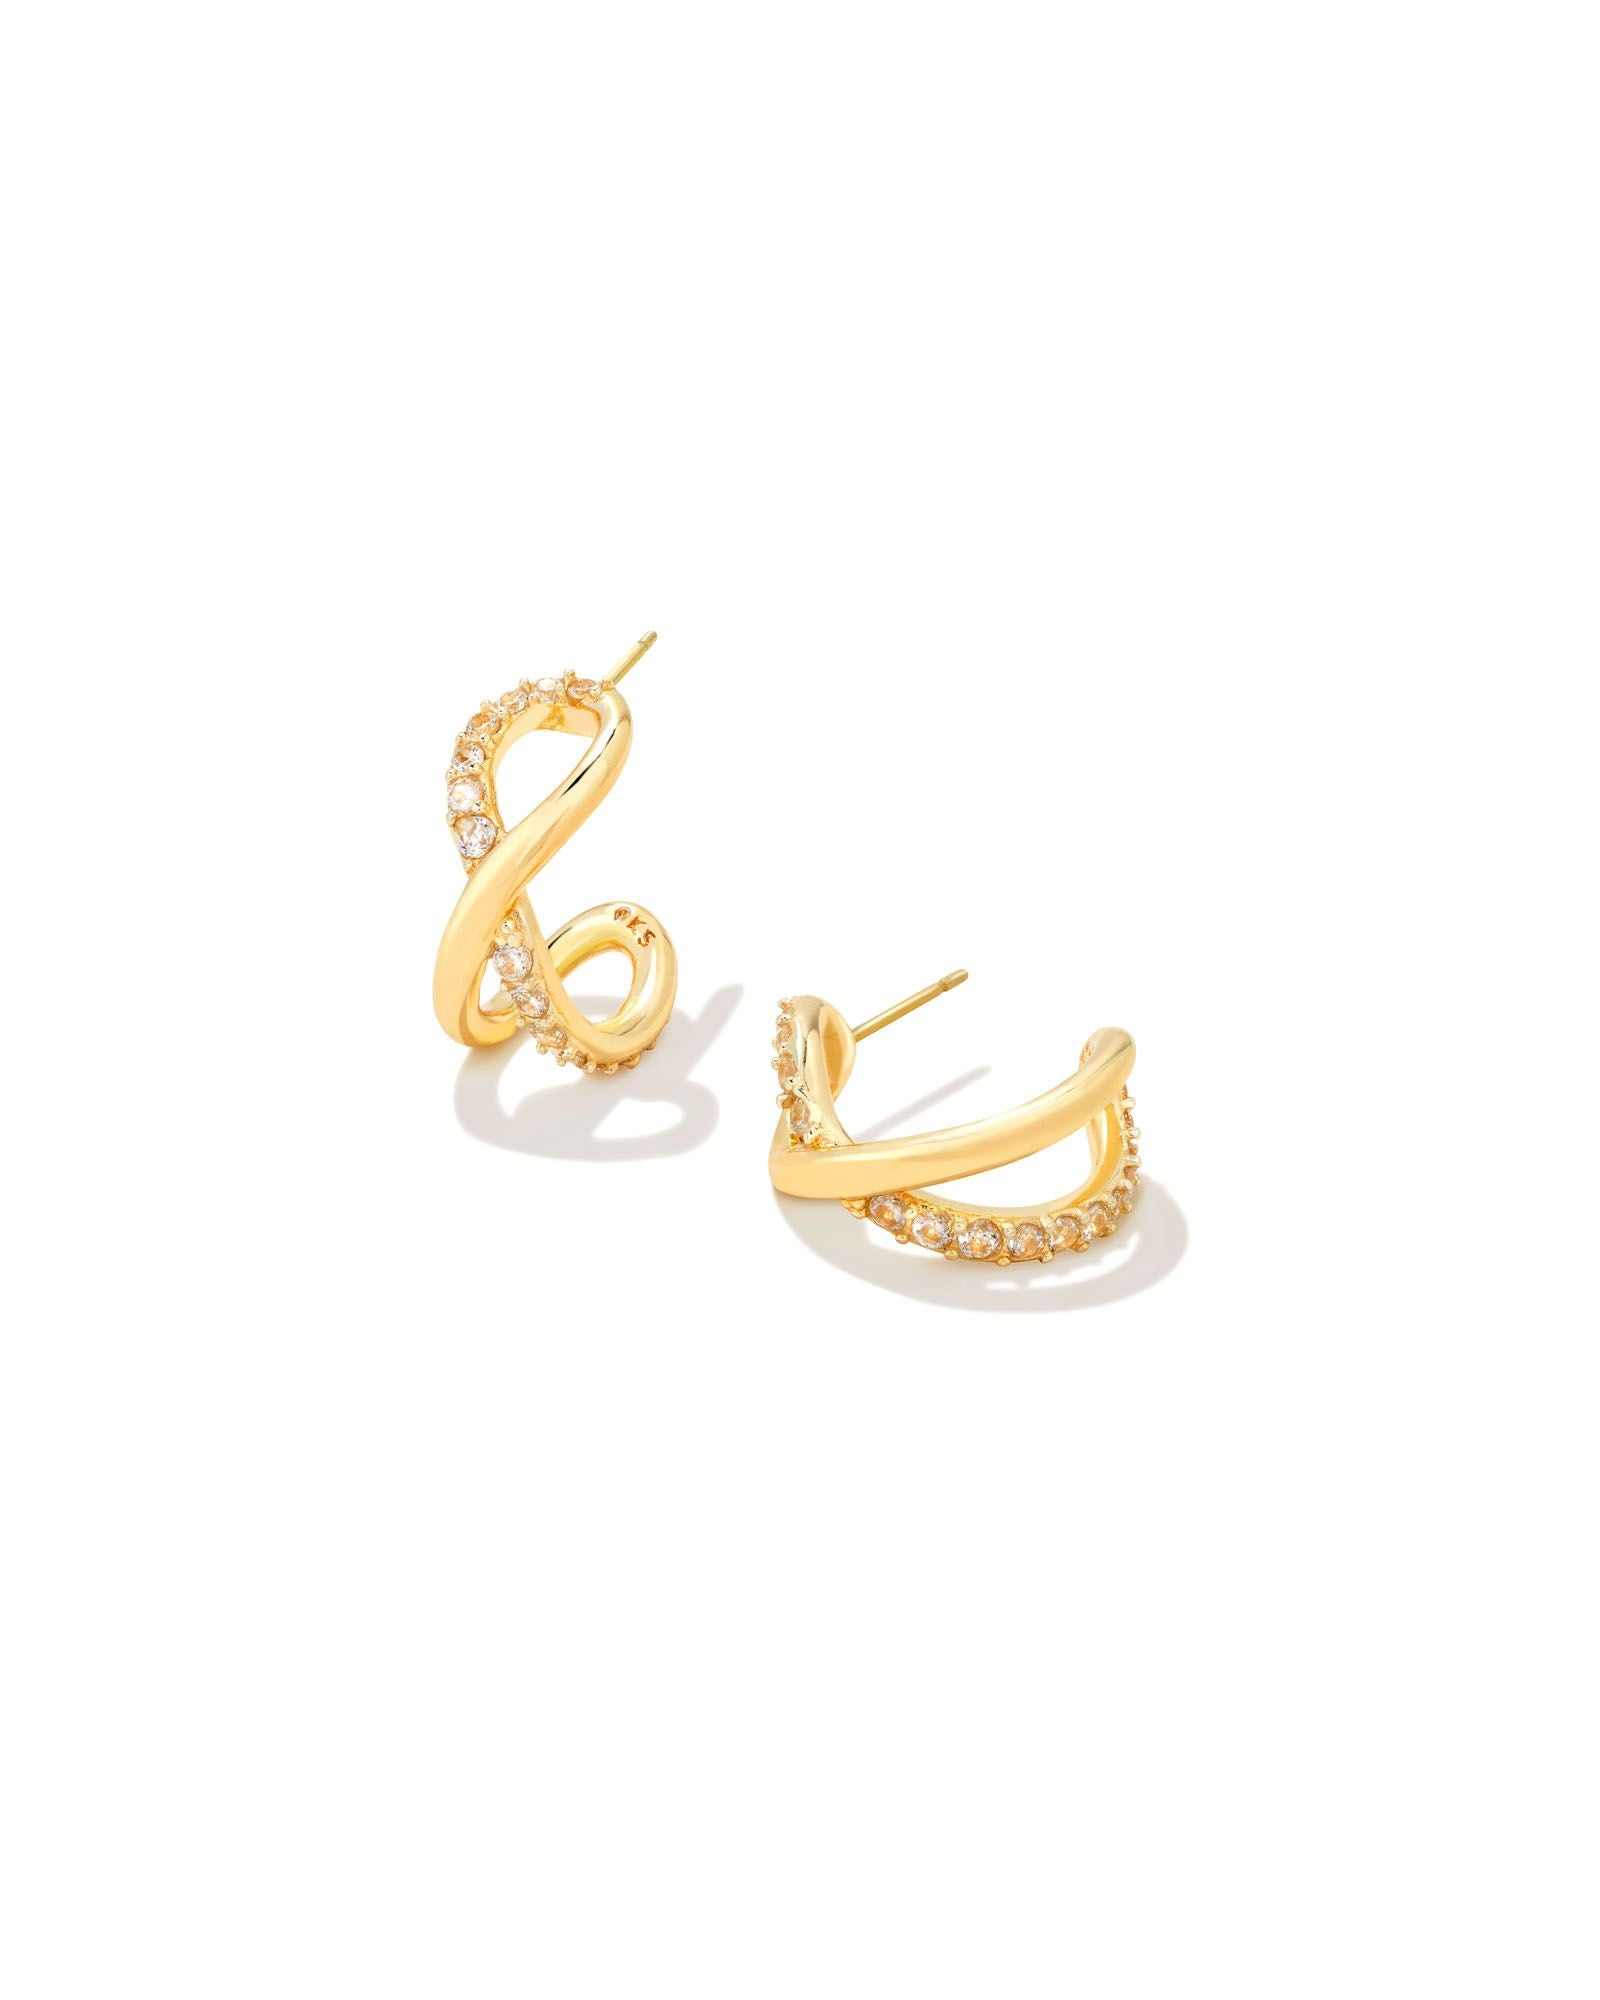 Kendra Scott Annie Huggie Earrings Gold White Crystal-Earrings-Kendra Scott-E1985GLD-The Twisted Chandelier